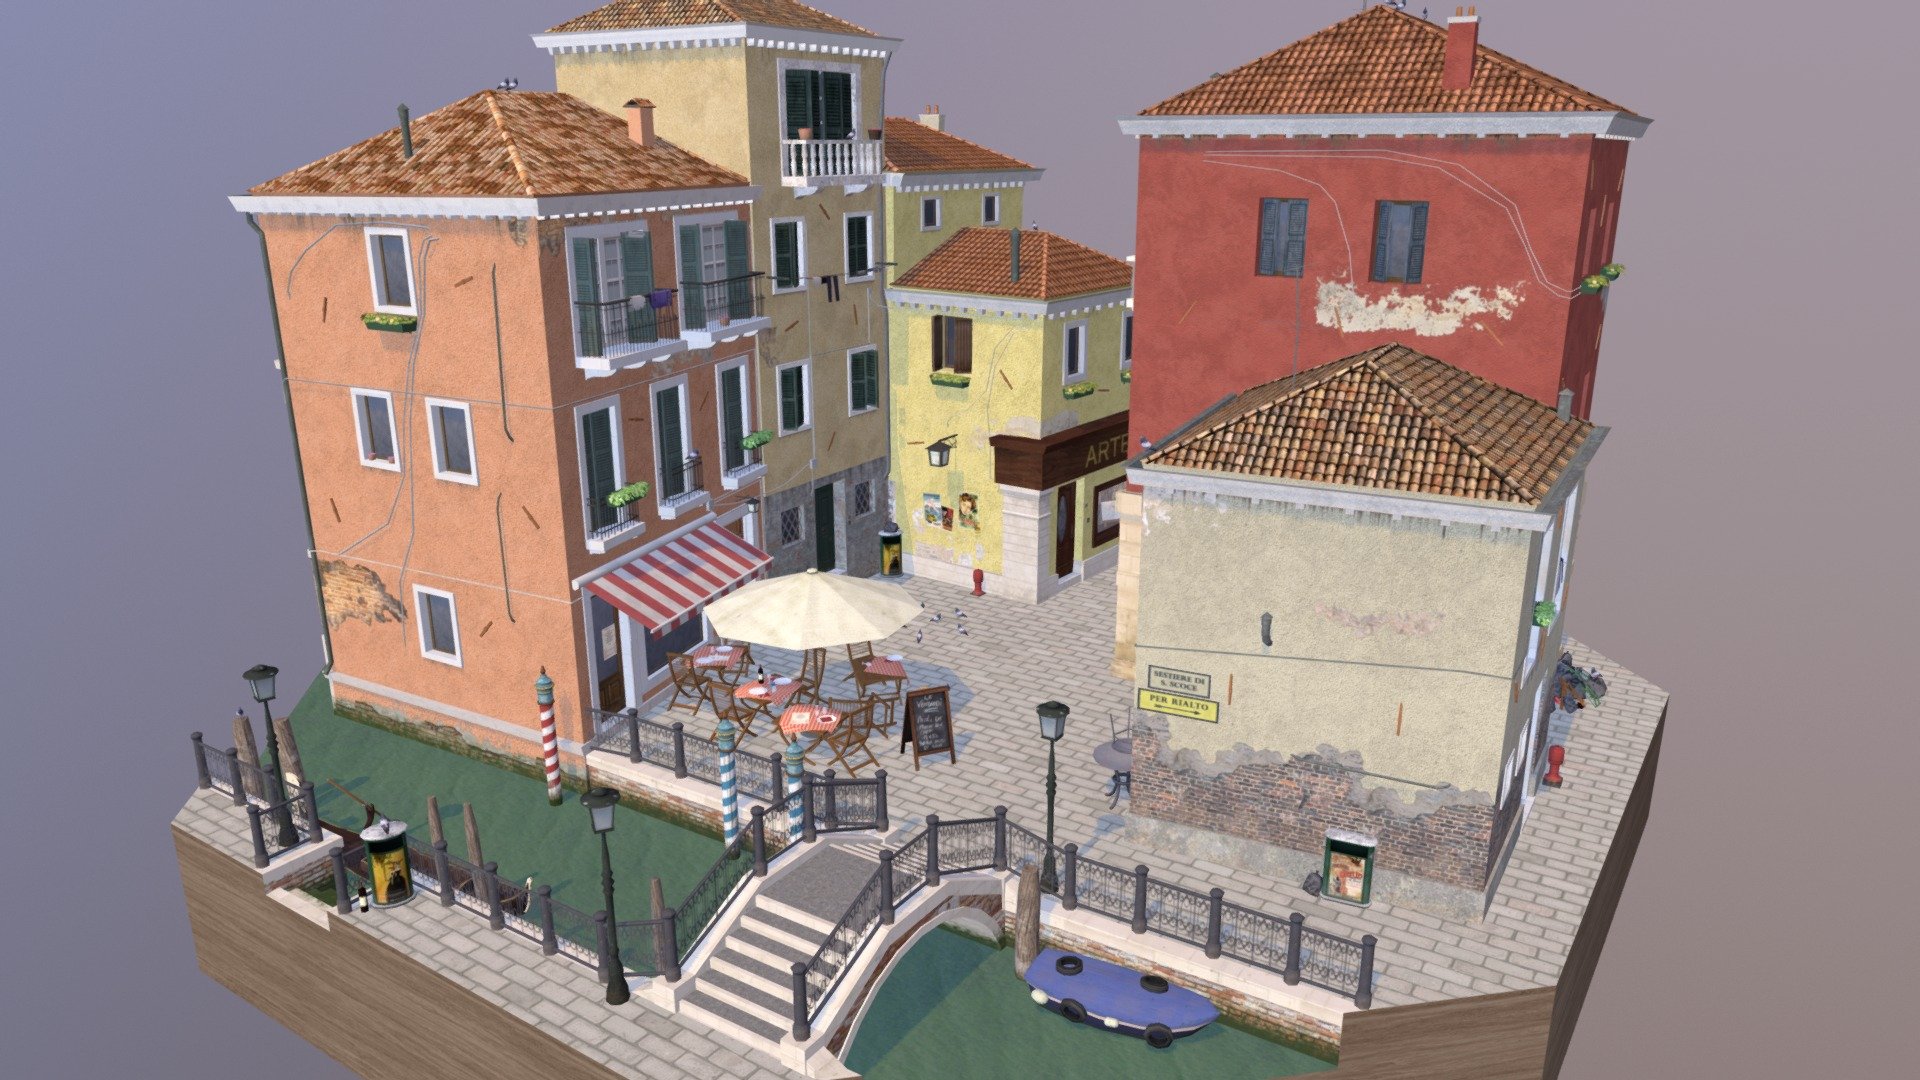 Low poly cityscene Venice by Lucas Van Hooste - 1DAE IGP20 - Cityscene Venice - 3D model by LucasVH 3d model